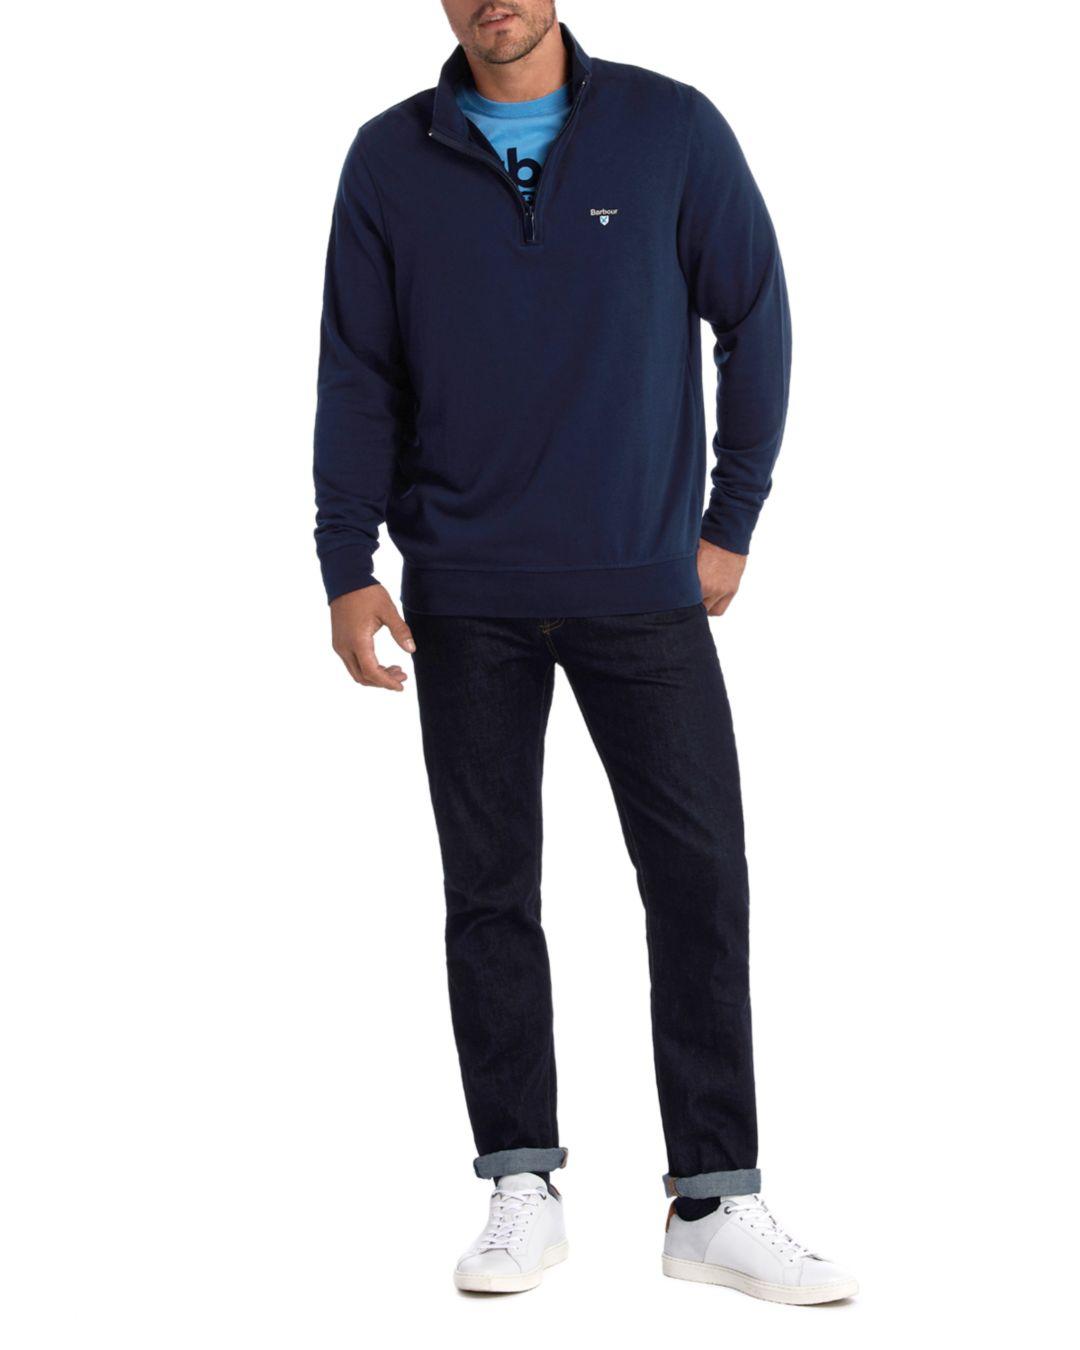 Barbour Cotton Batten Quarter - Zip Sweater in Navy (Blue) for Men - Lyst